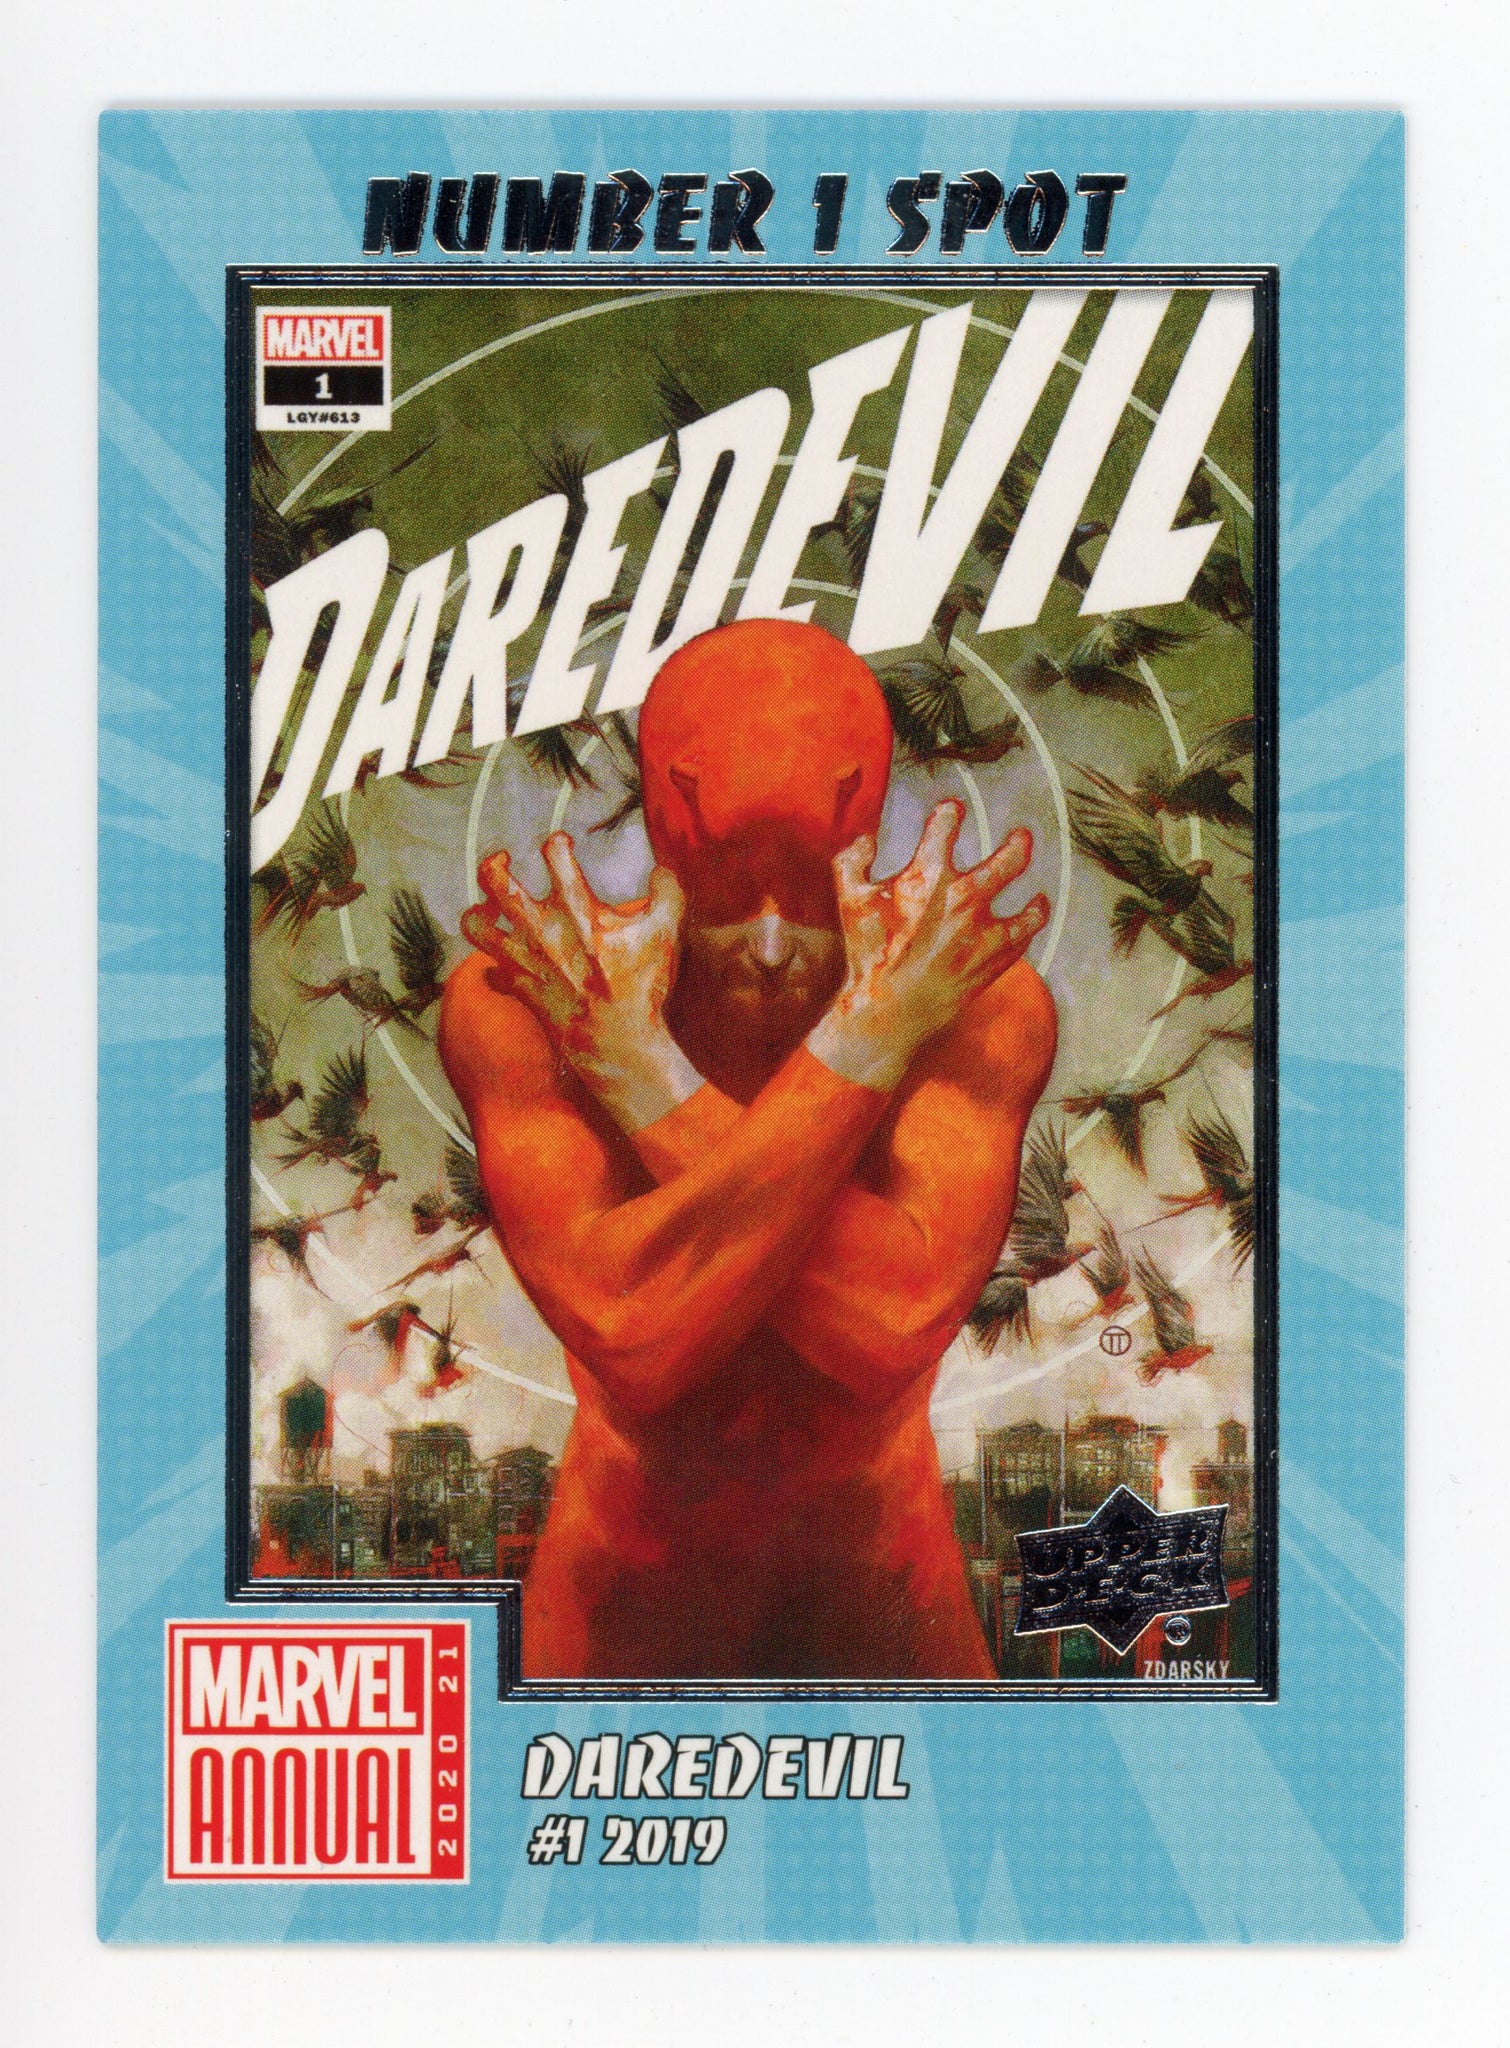 2020-2021 Daredevil Number 1 Spot Upper Deck Marvel Annual # N1S-1